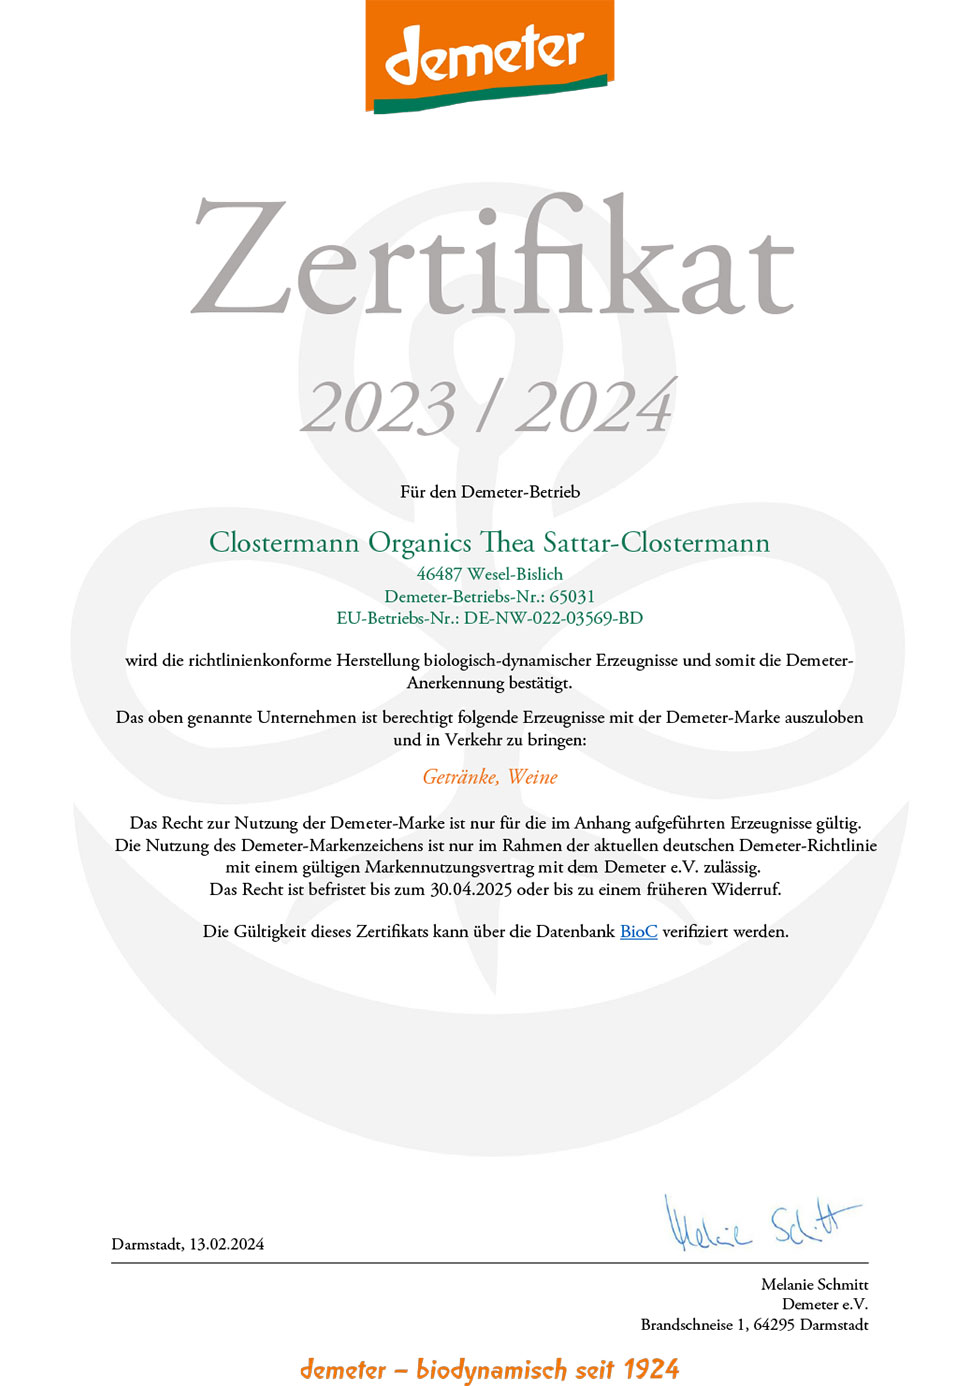 Demeter Zertifikat 2023/2024 Thea Clostermann